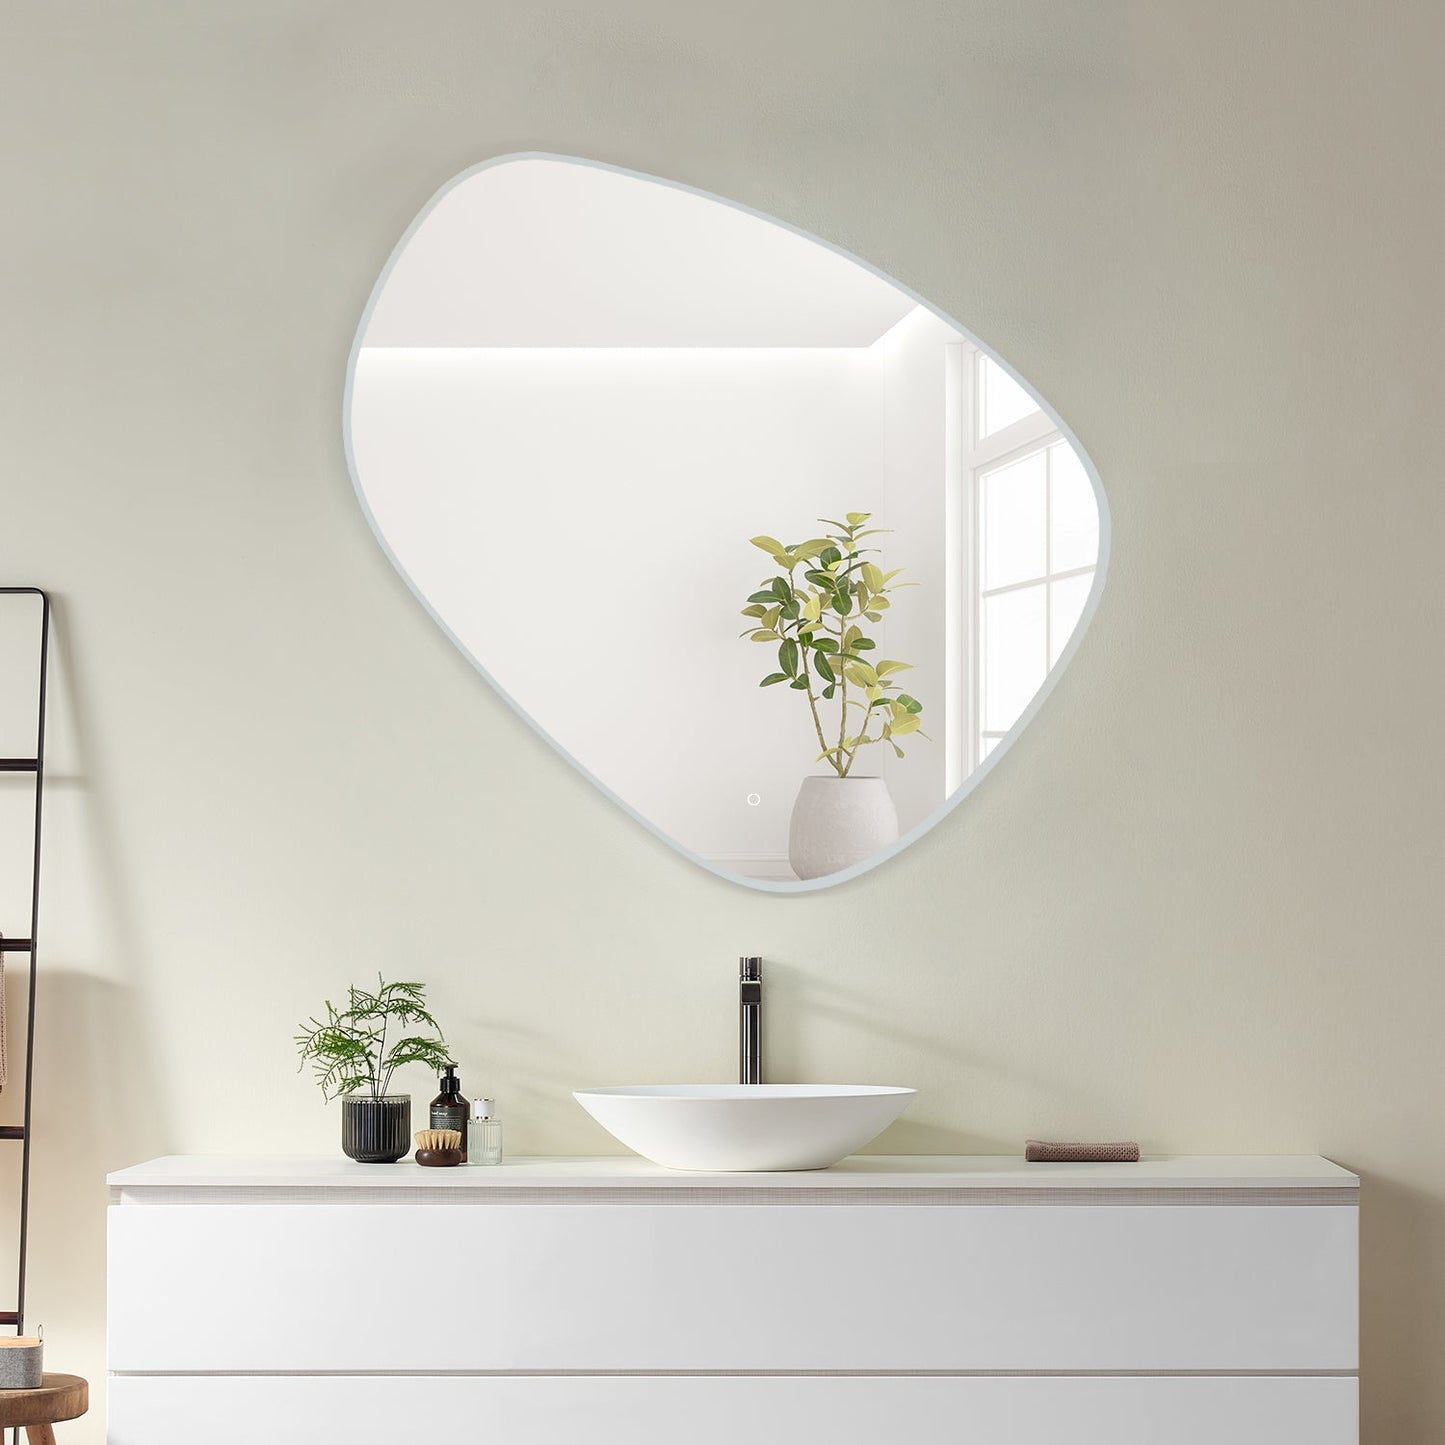 Rasso Novelty 47" Frameless Modern Bathroom/Vanity LED Lighted Wall Mirror